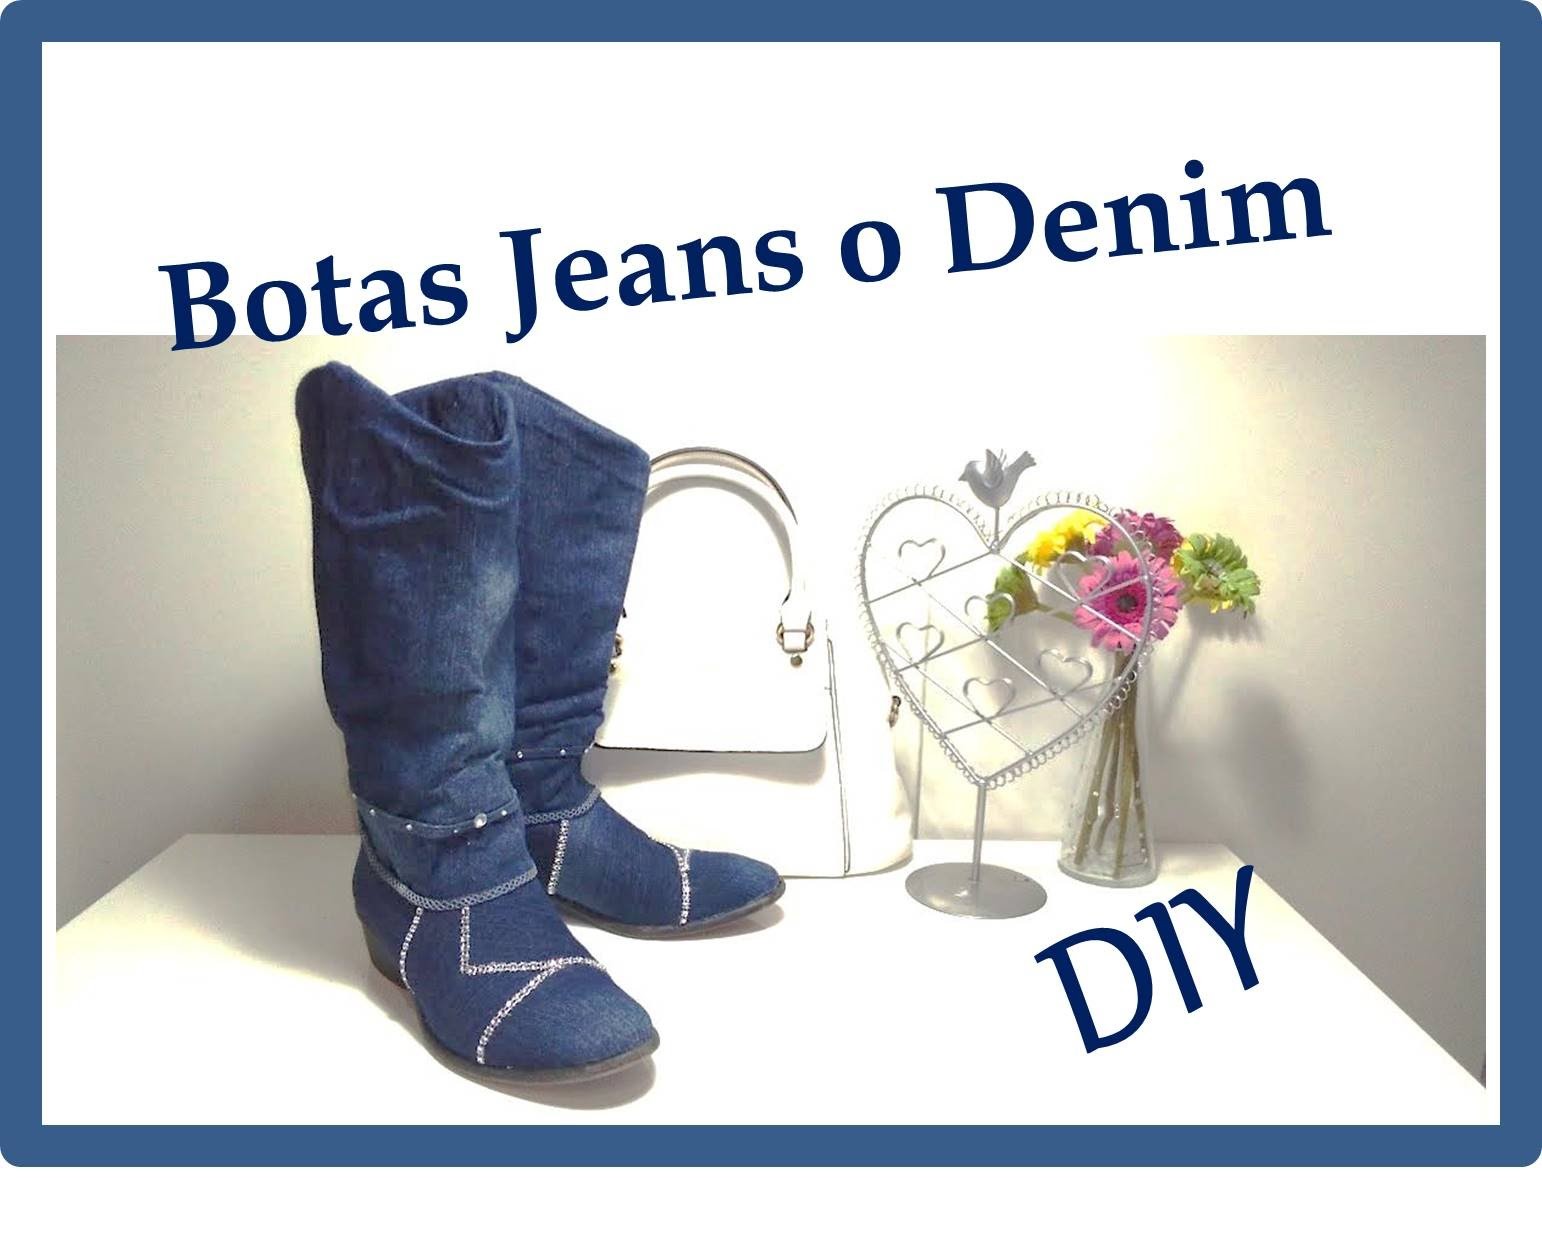 DIY Como Forrar zapatos o botas  con tela Jeans o Denim "Customizar, Renovar, Reciclar"